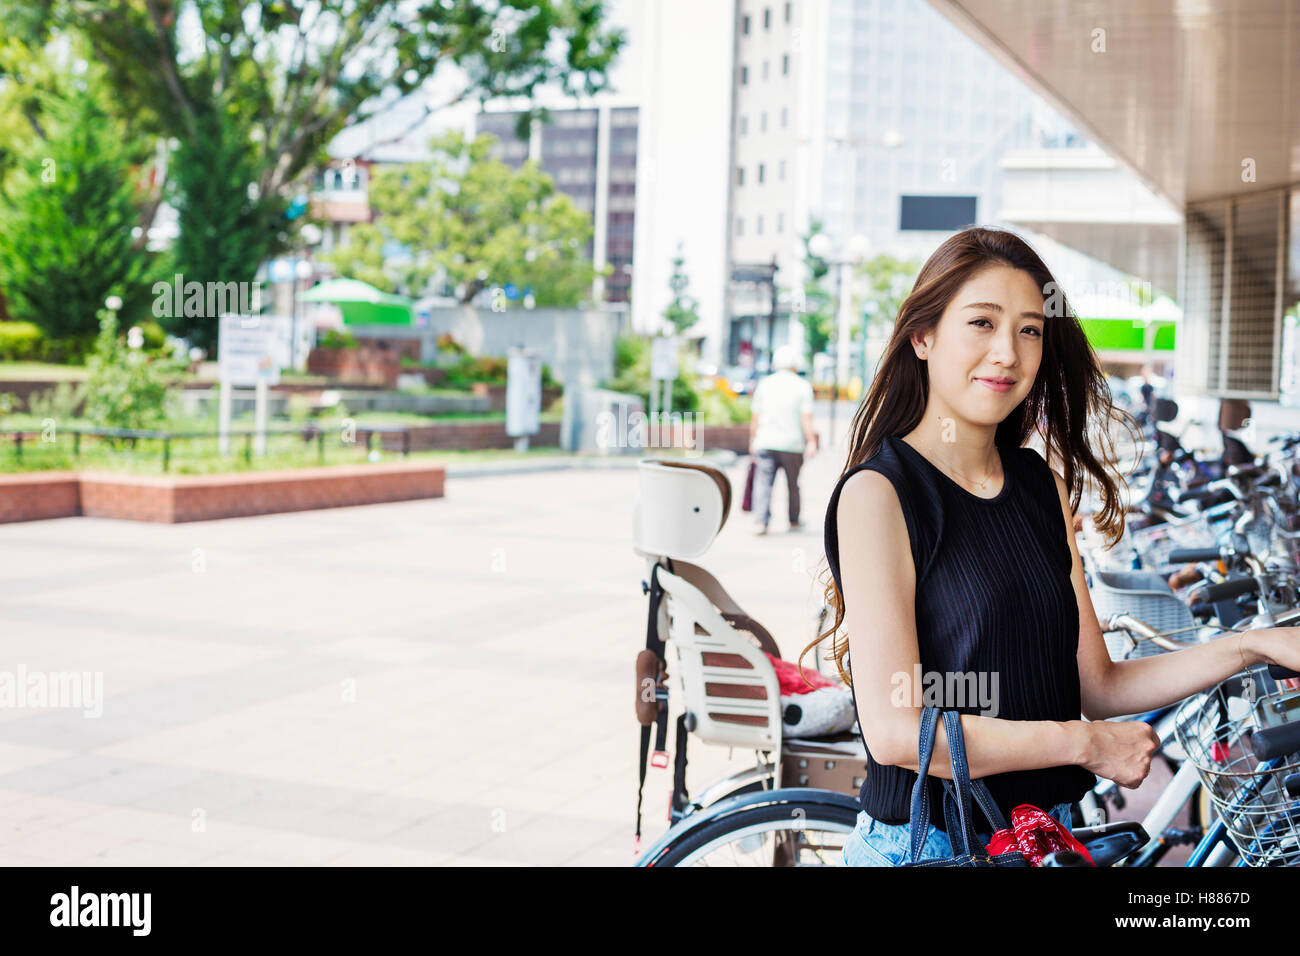 Lächelnde junge Frau mit langen braunen Haaren stand neben dem Fahrrad. Stockfoto